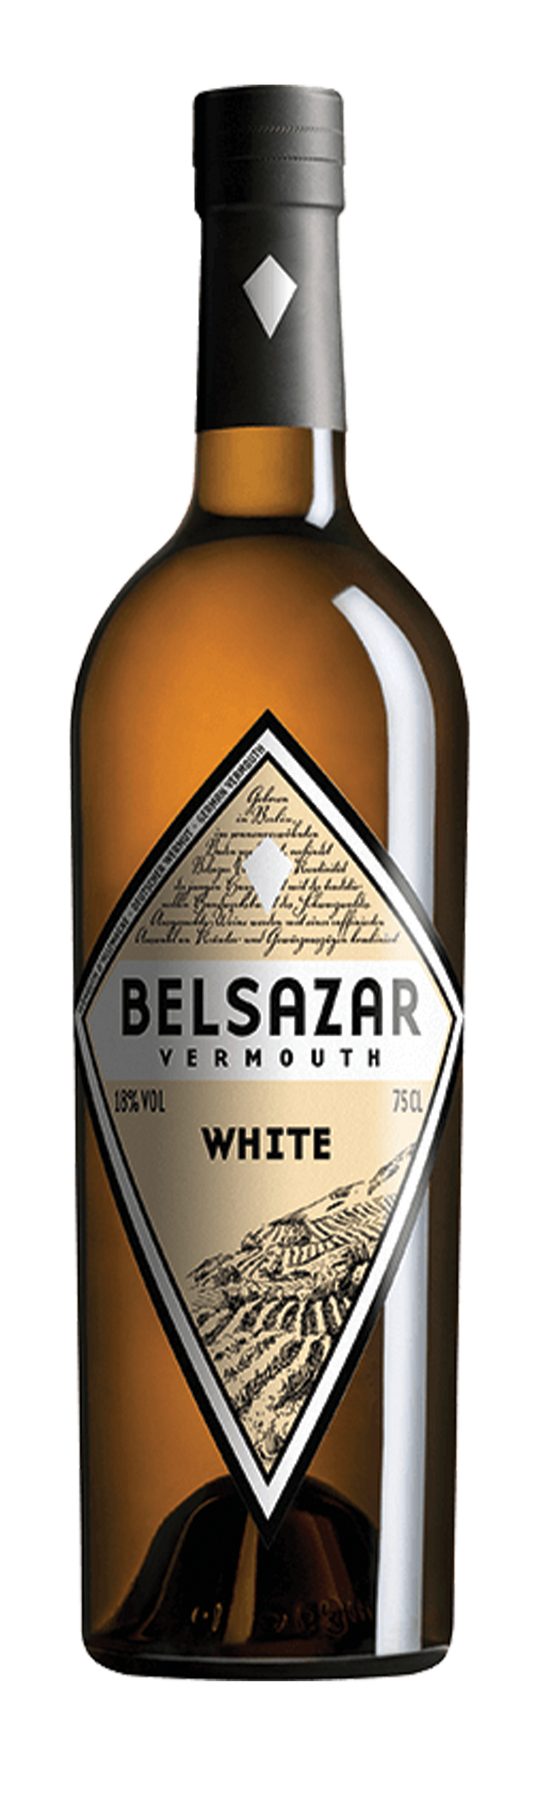 Belsazar White 18% 75cl Vermouth